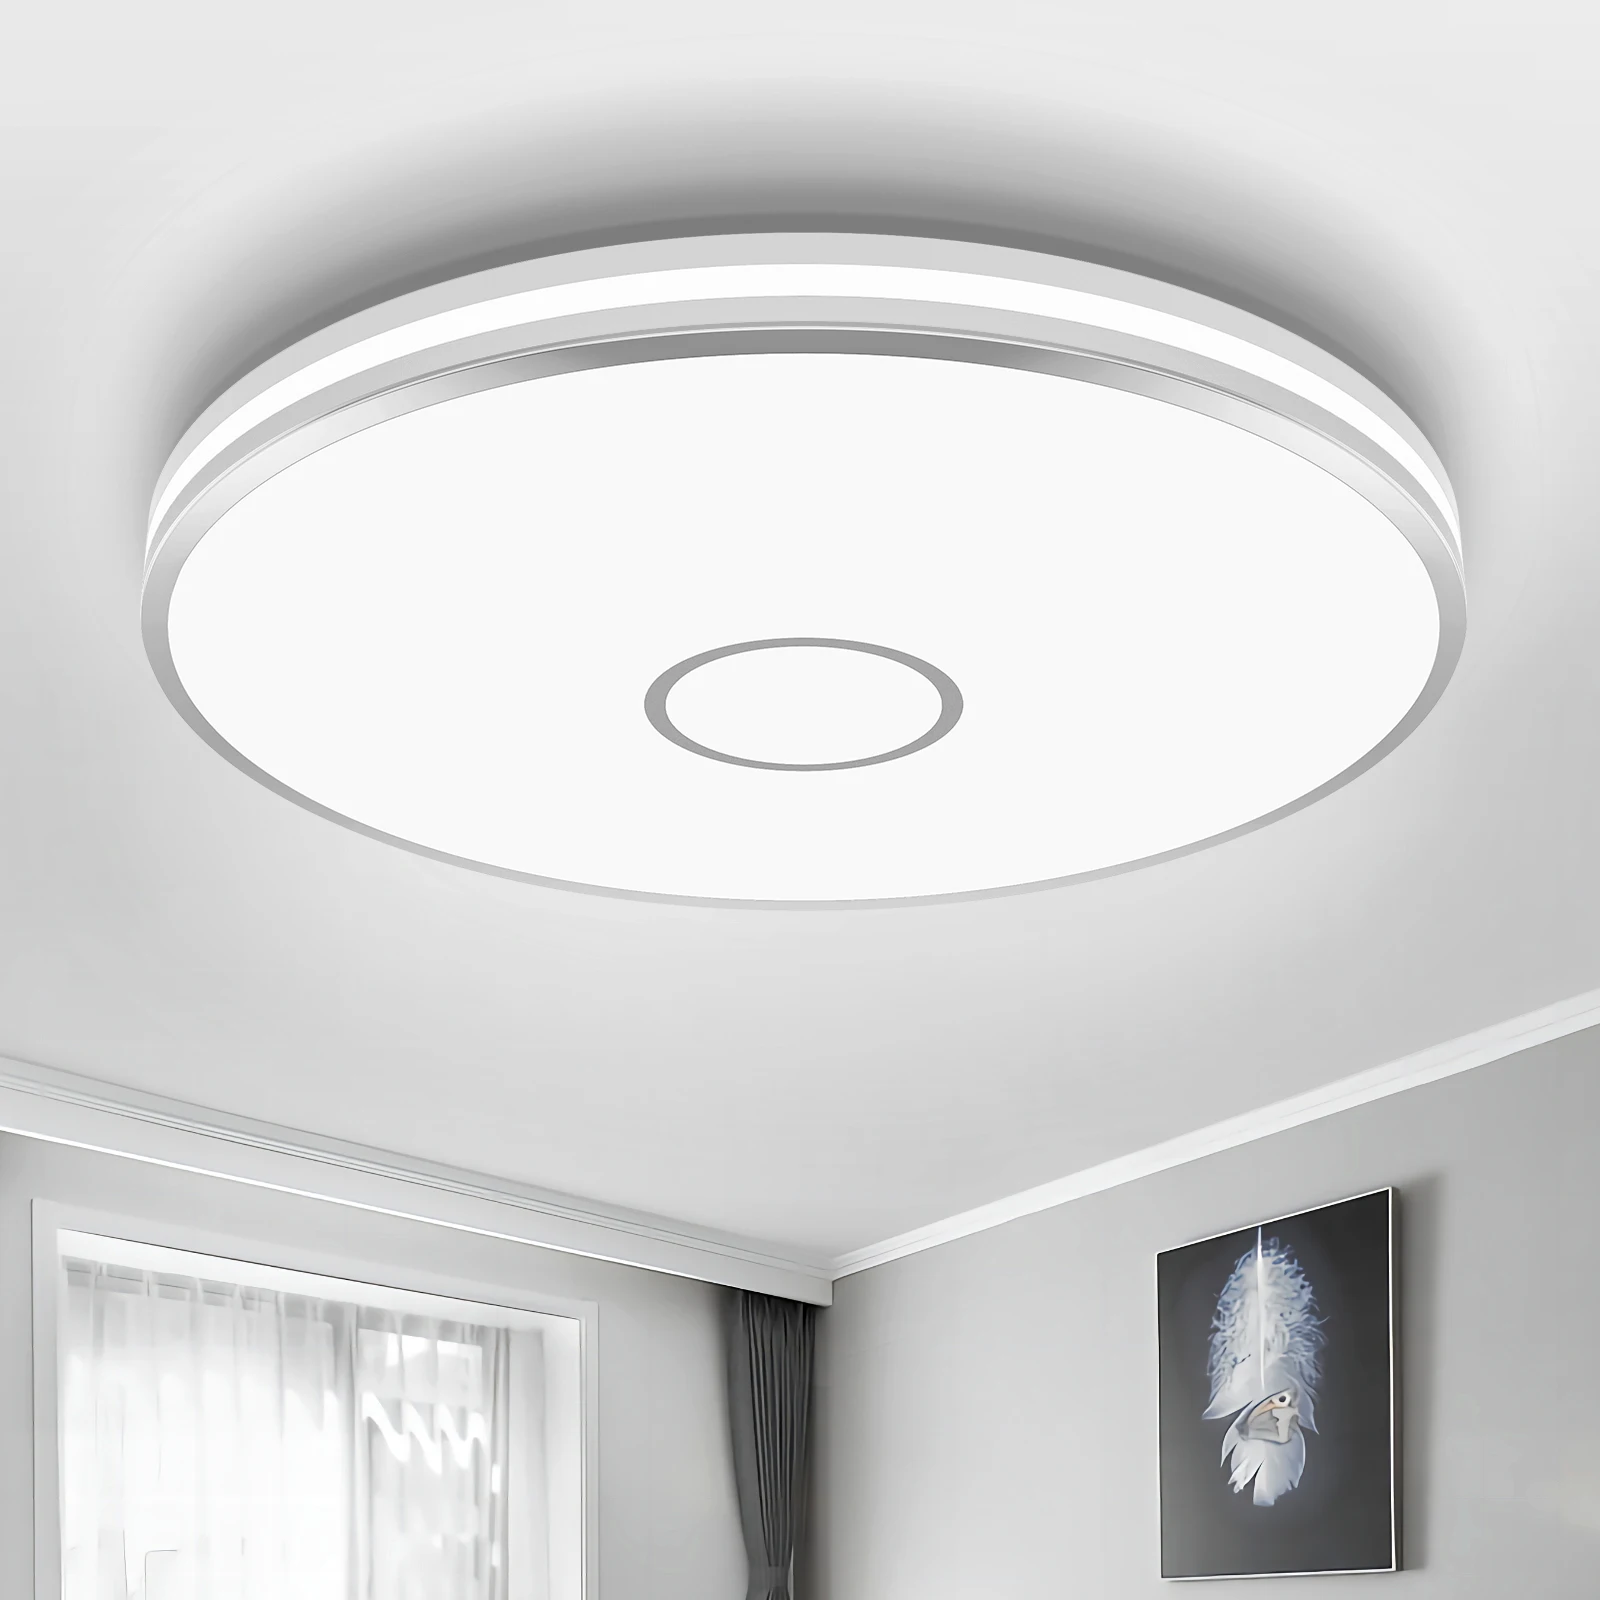 

Nordic Modern Style House Design Flush Mount Panel Led Ceiling Light Fixtures For Living Room